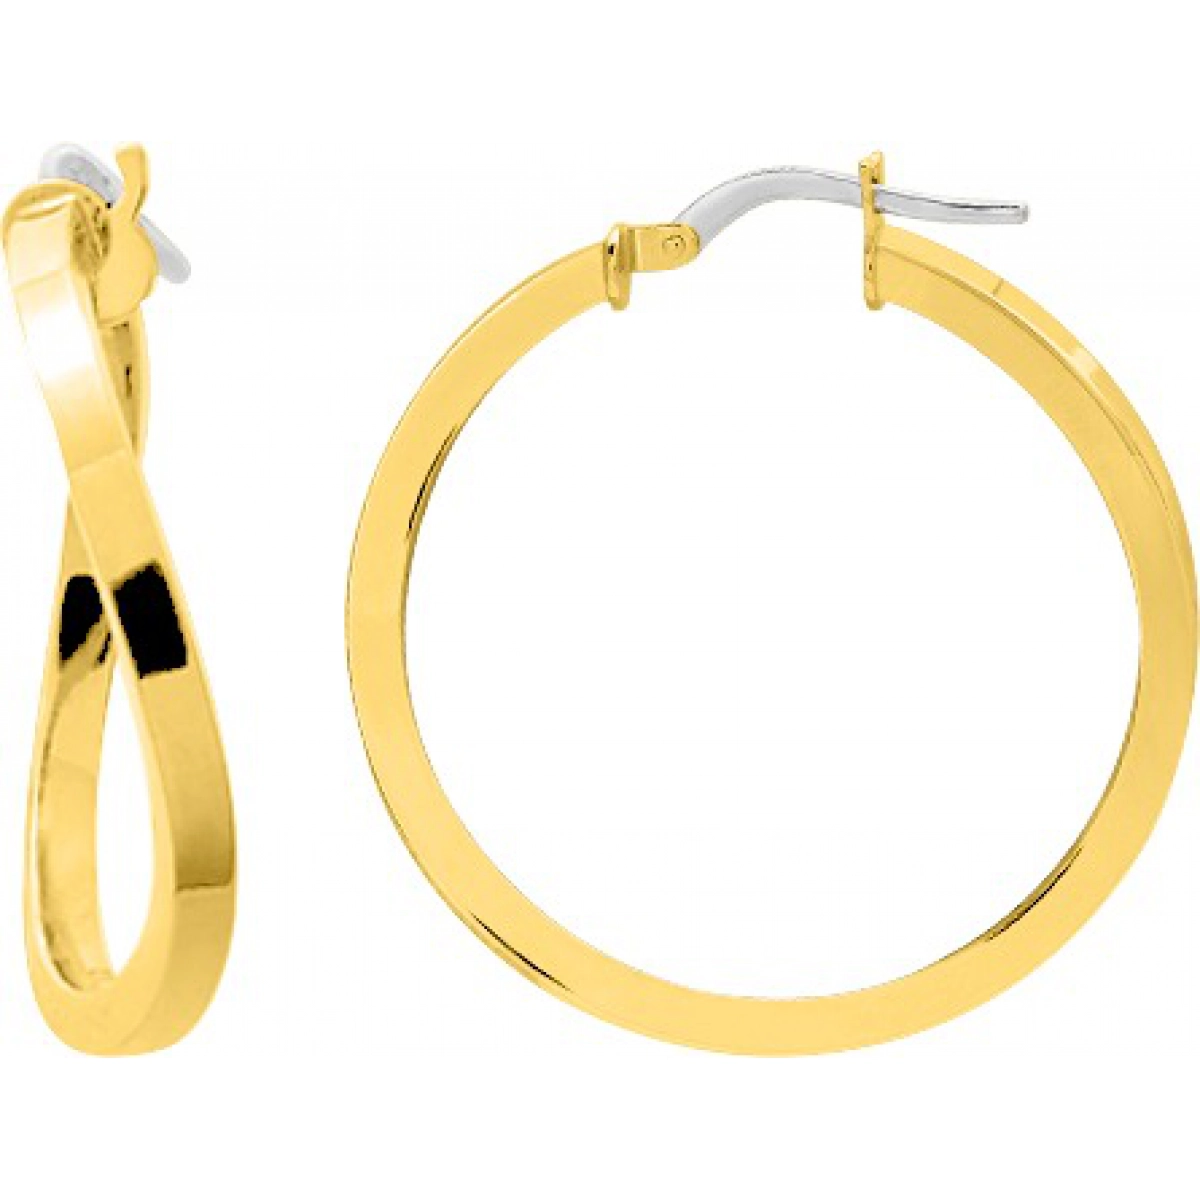 Hoops earrings pair 9K YG  Lua Blanca  9K3524.53.0